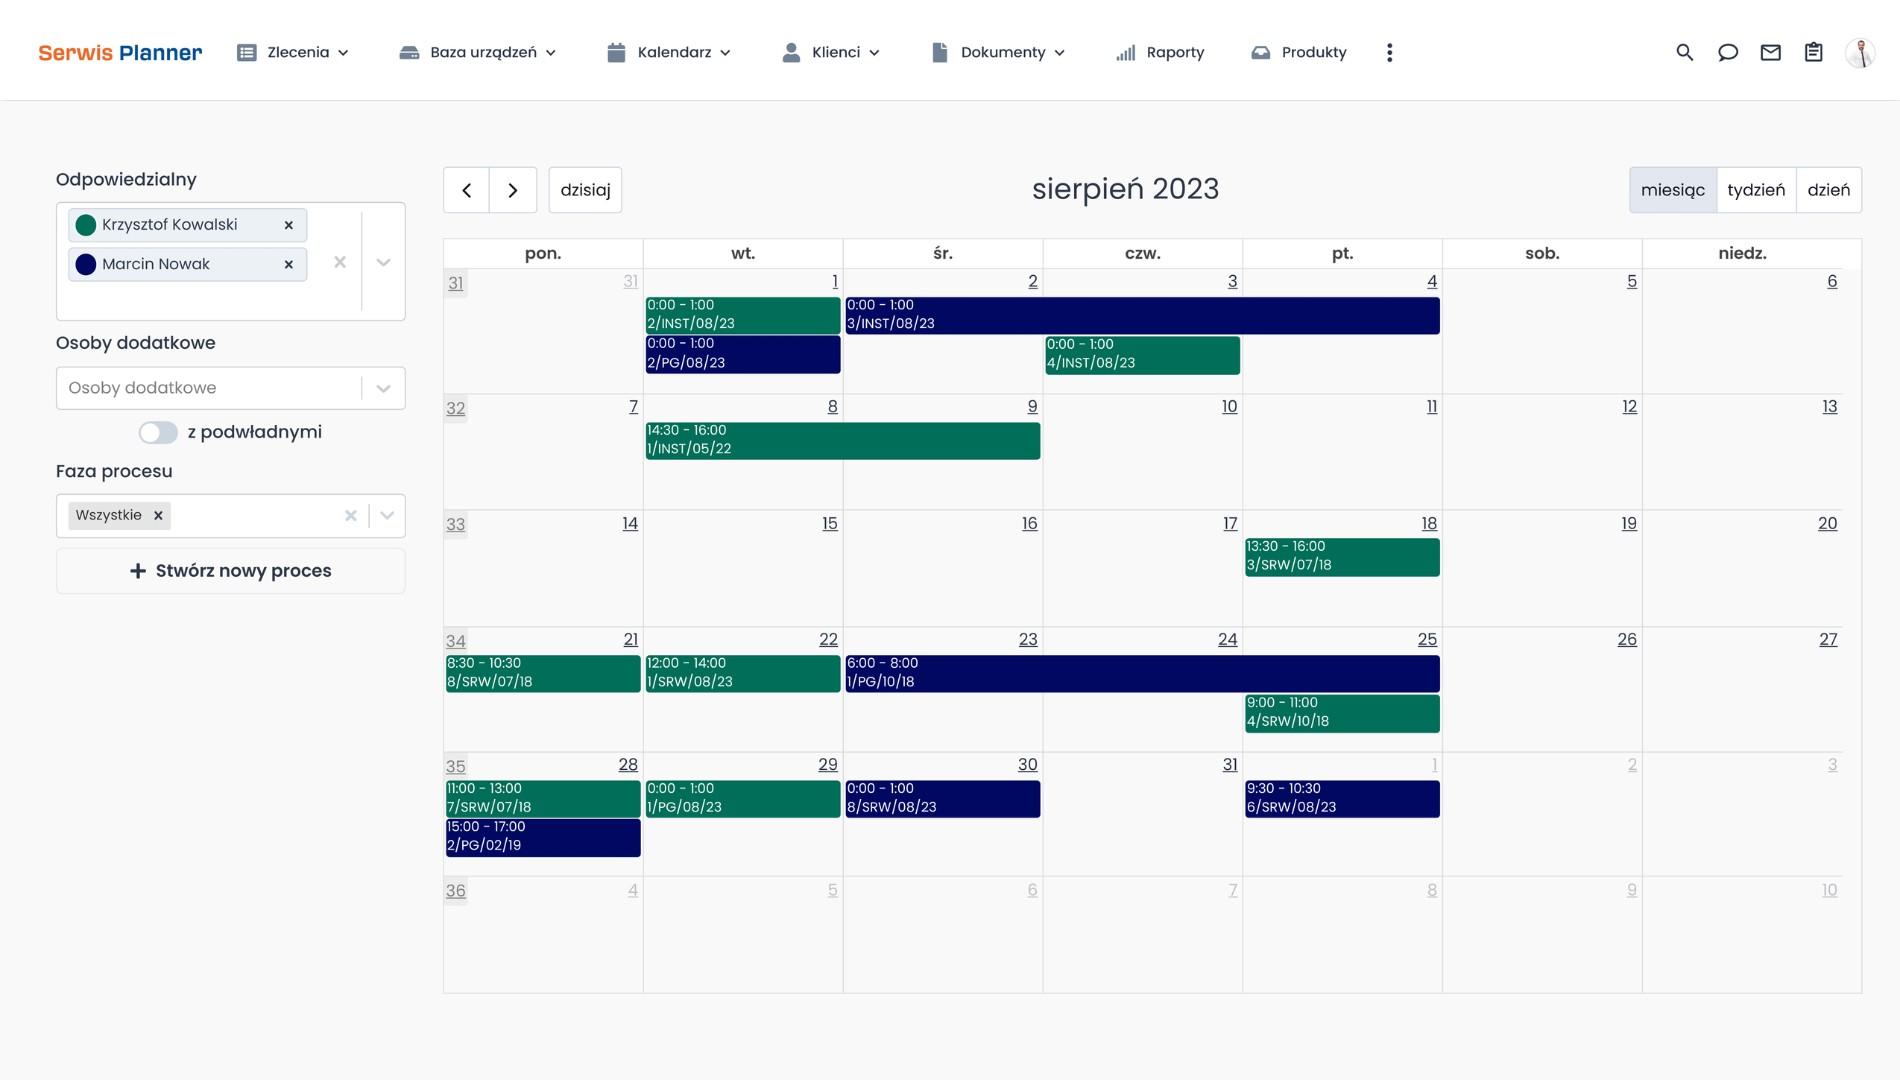 Nowy kalendarz zleceń Serwis Planner